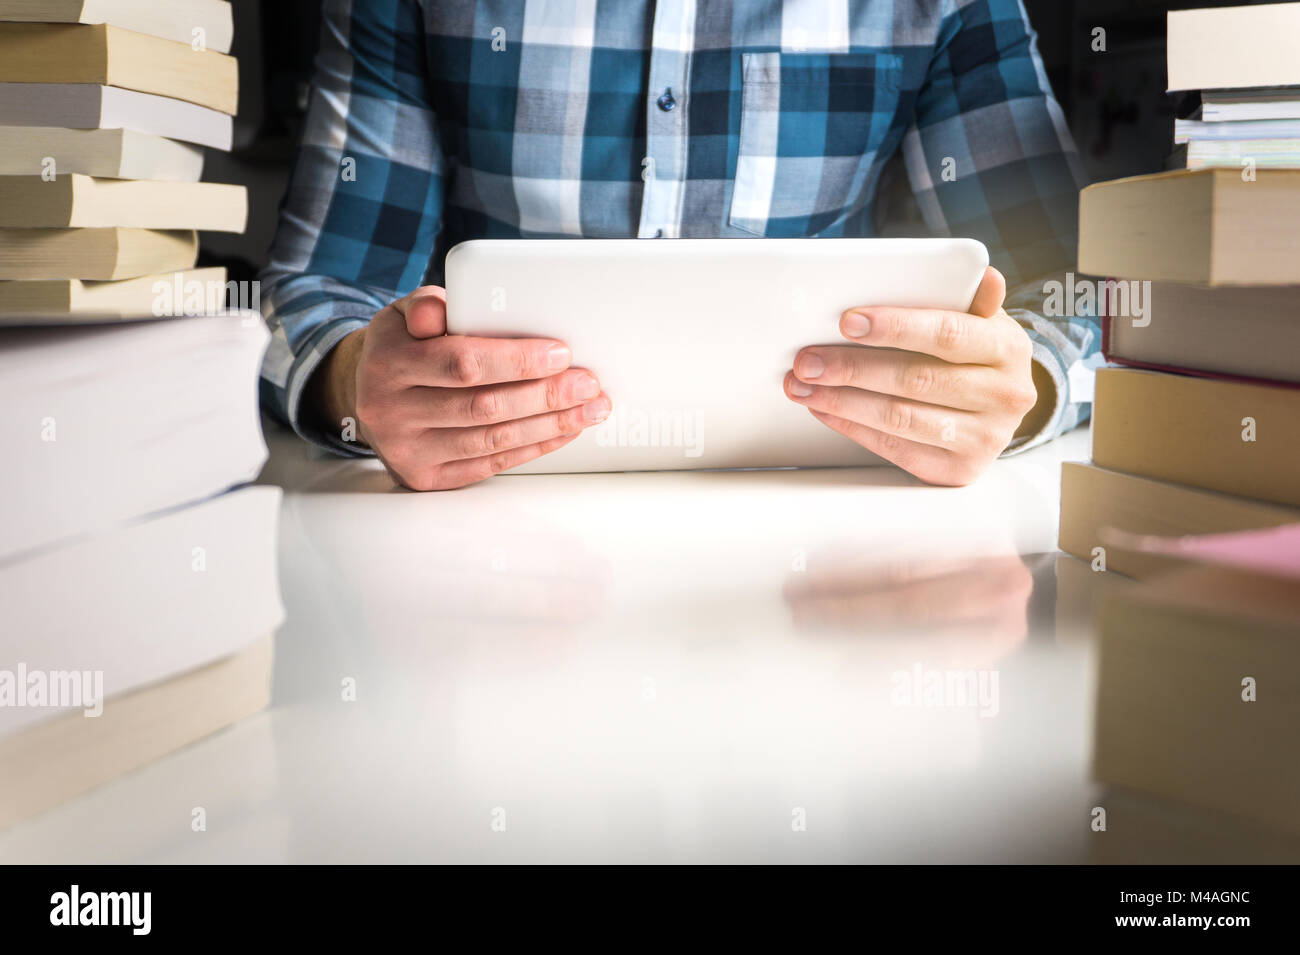 Homme tenant le livre électronique Reader. Student de tablettes et smart mobile device dans la bibliothèque ou la maison. Banque D'Images